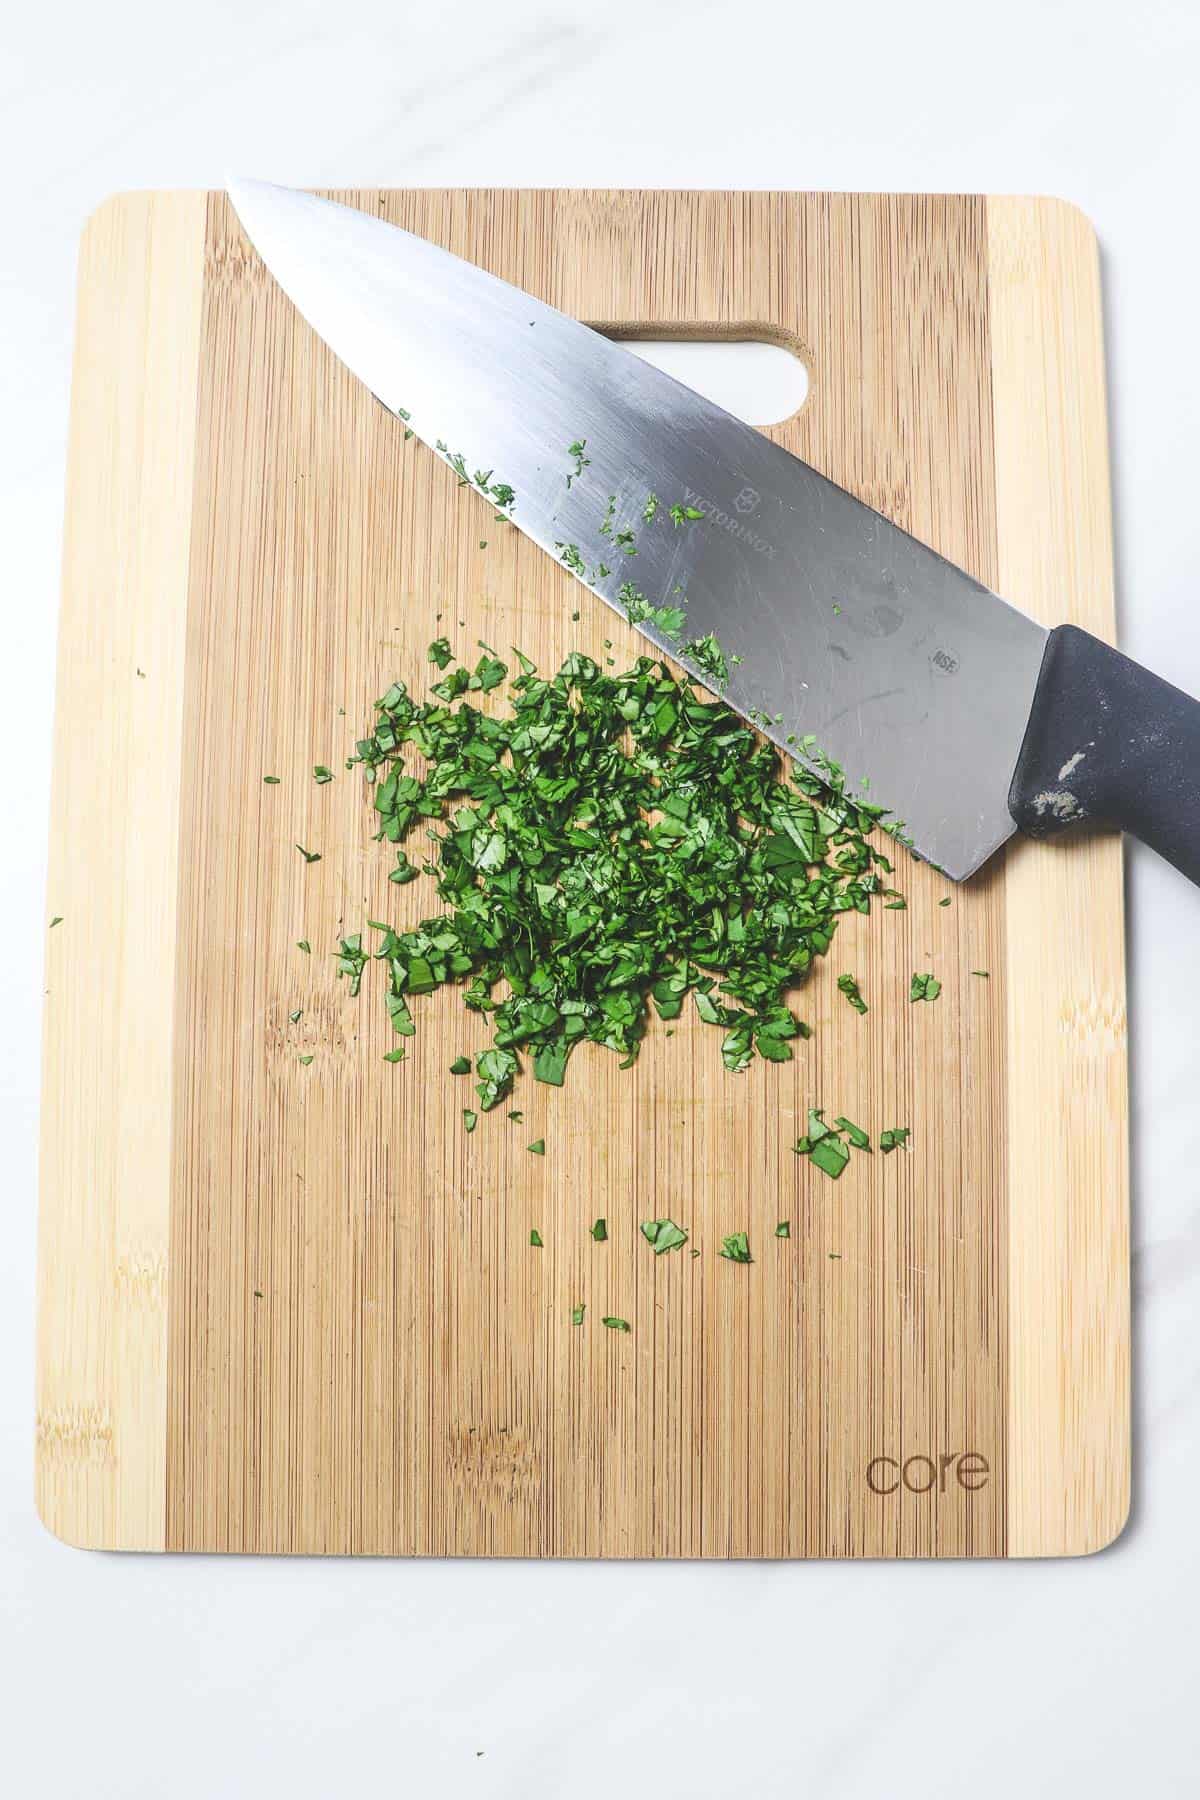 chopping fresh cilantro on a cutting board